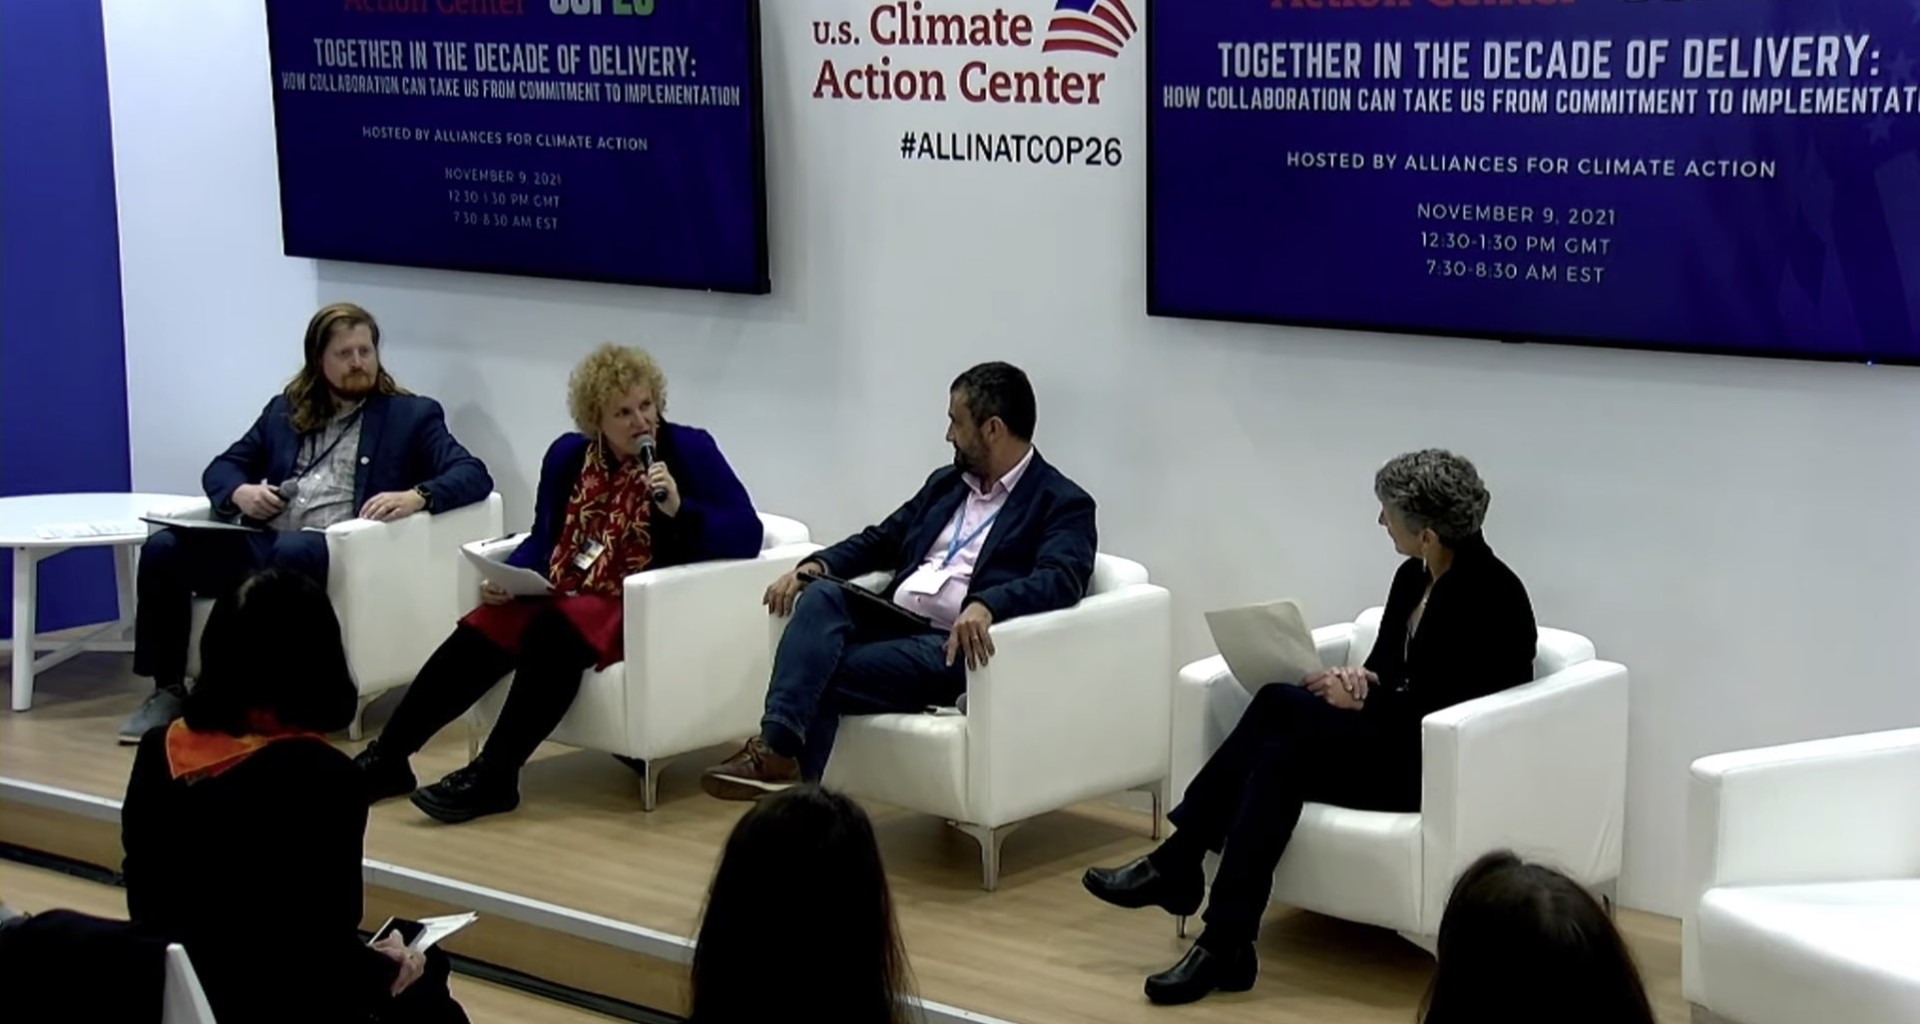 Inés Saenz, vicepresidenta de sostenibilidad del Tec de Monterrey, en la conferencia climática de Glasgow, Escocia, COP26